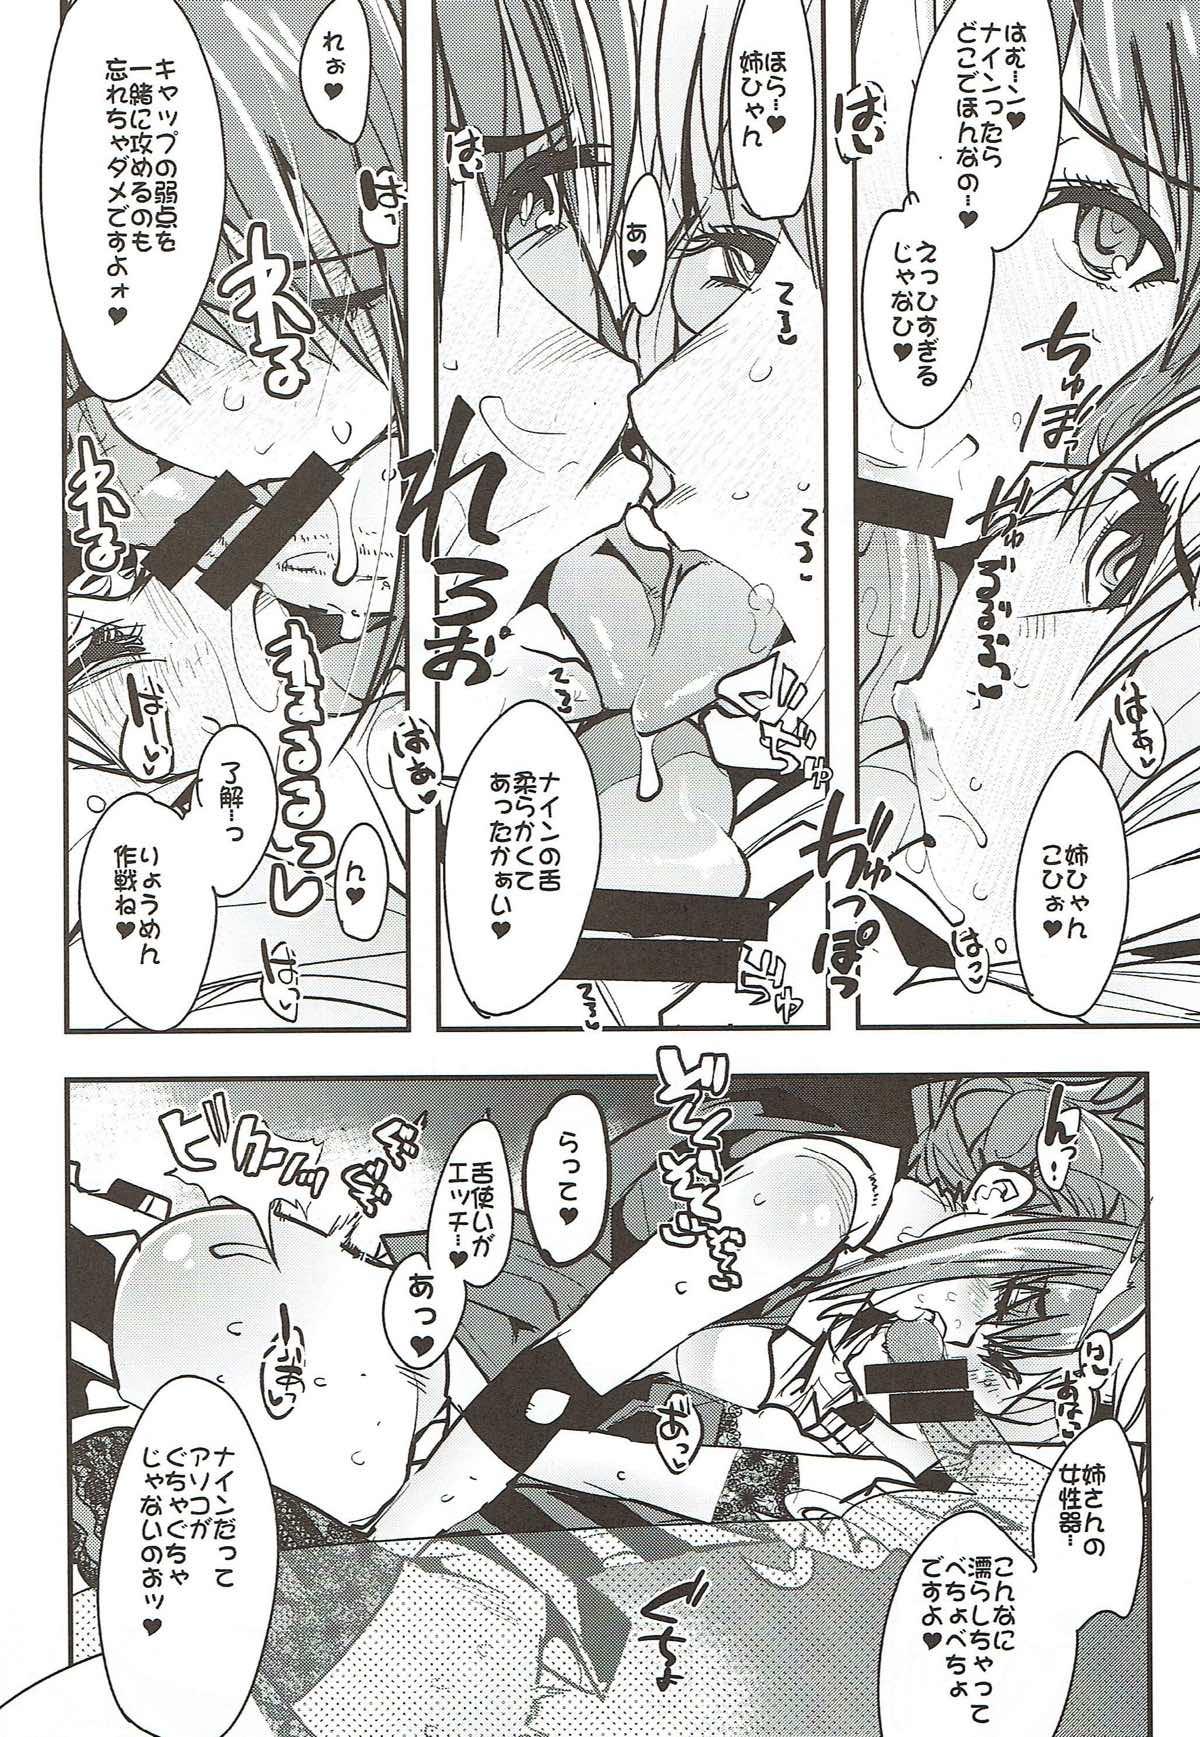 Hiddencam Boku no Watashi no Super Bobobbo Taisen VΩ - Super robot wars Naija - Page 8